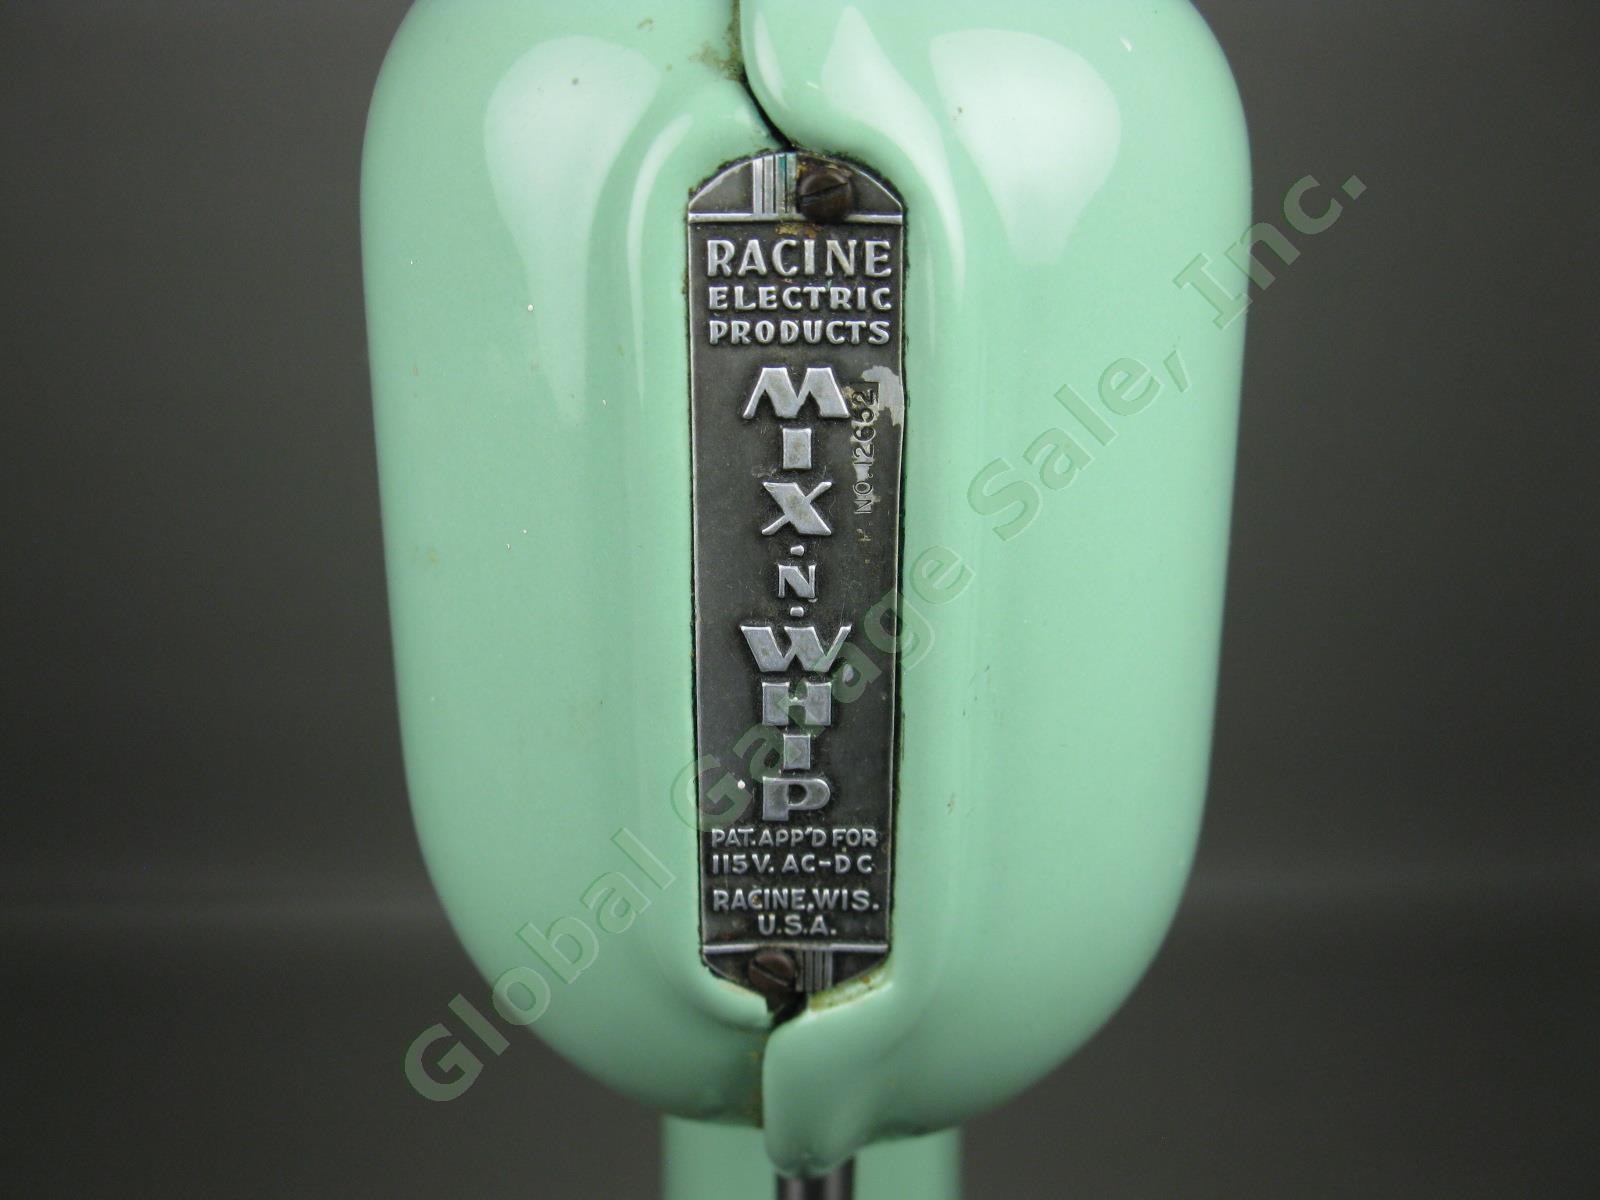 Vtg Racine Mix N Whip Green Porcelain Malt Milkshake Maker Mixer Machine Blender 2